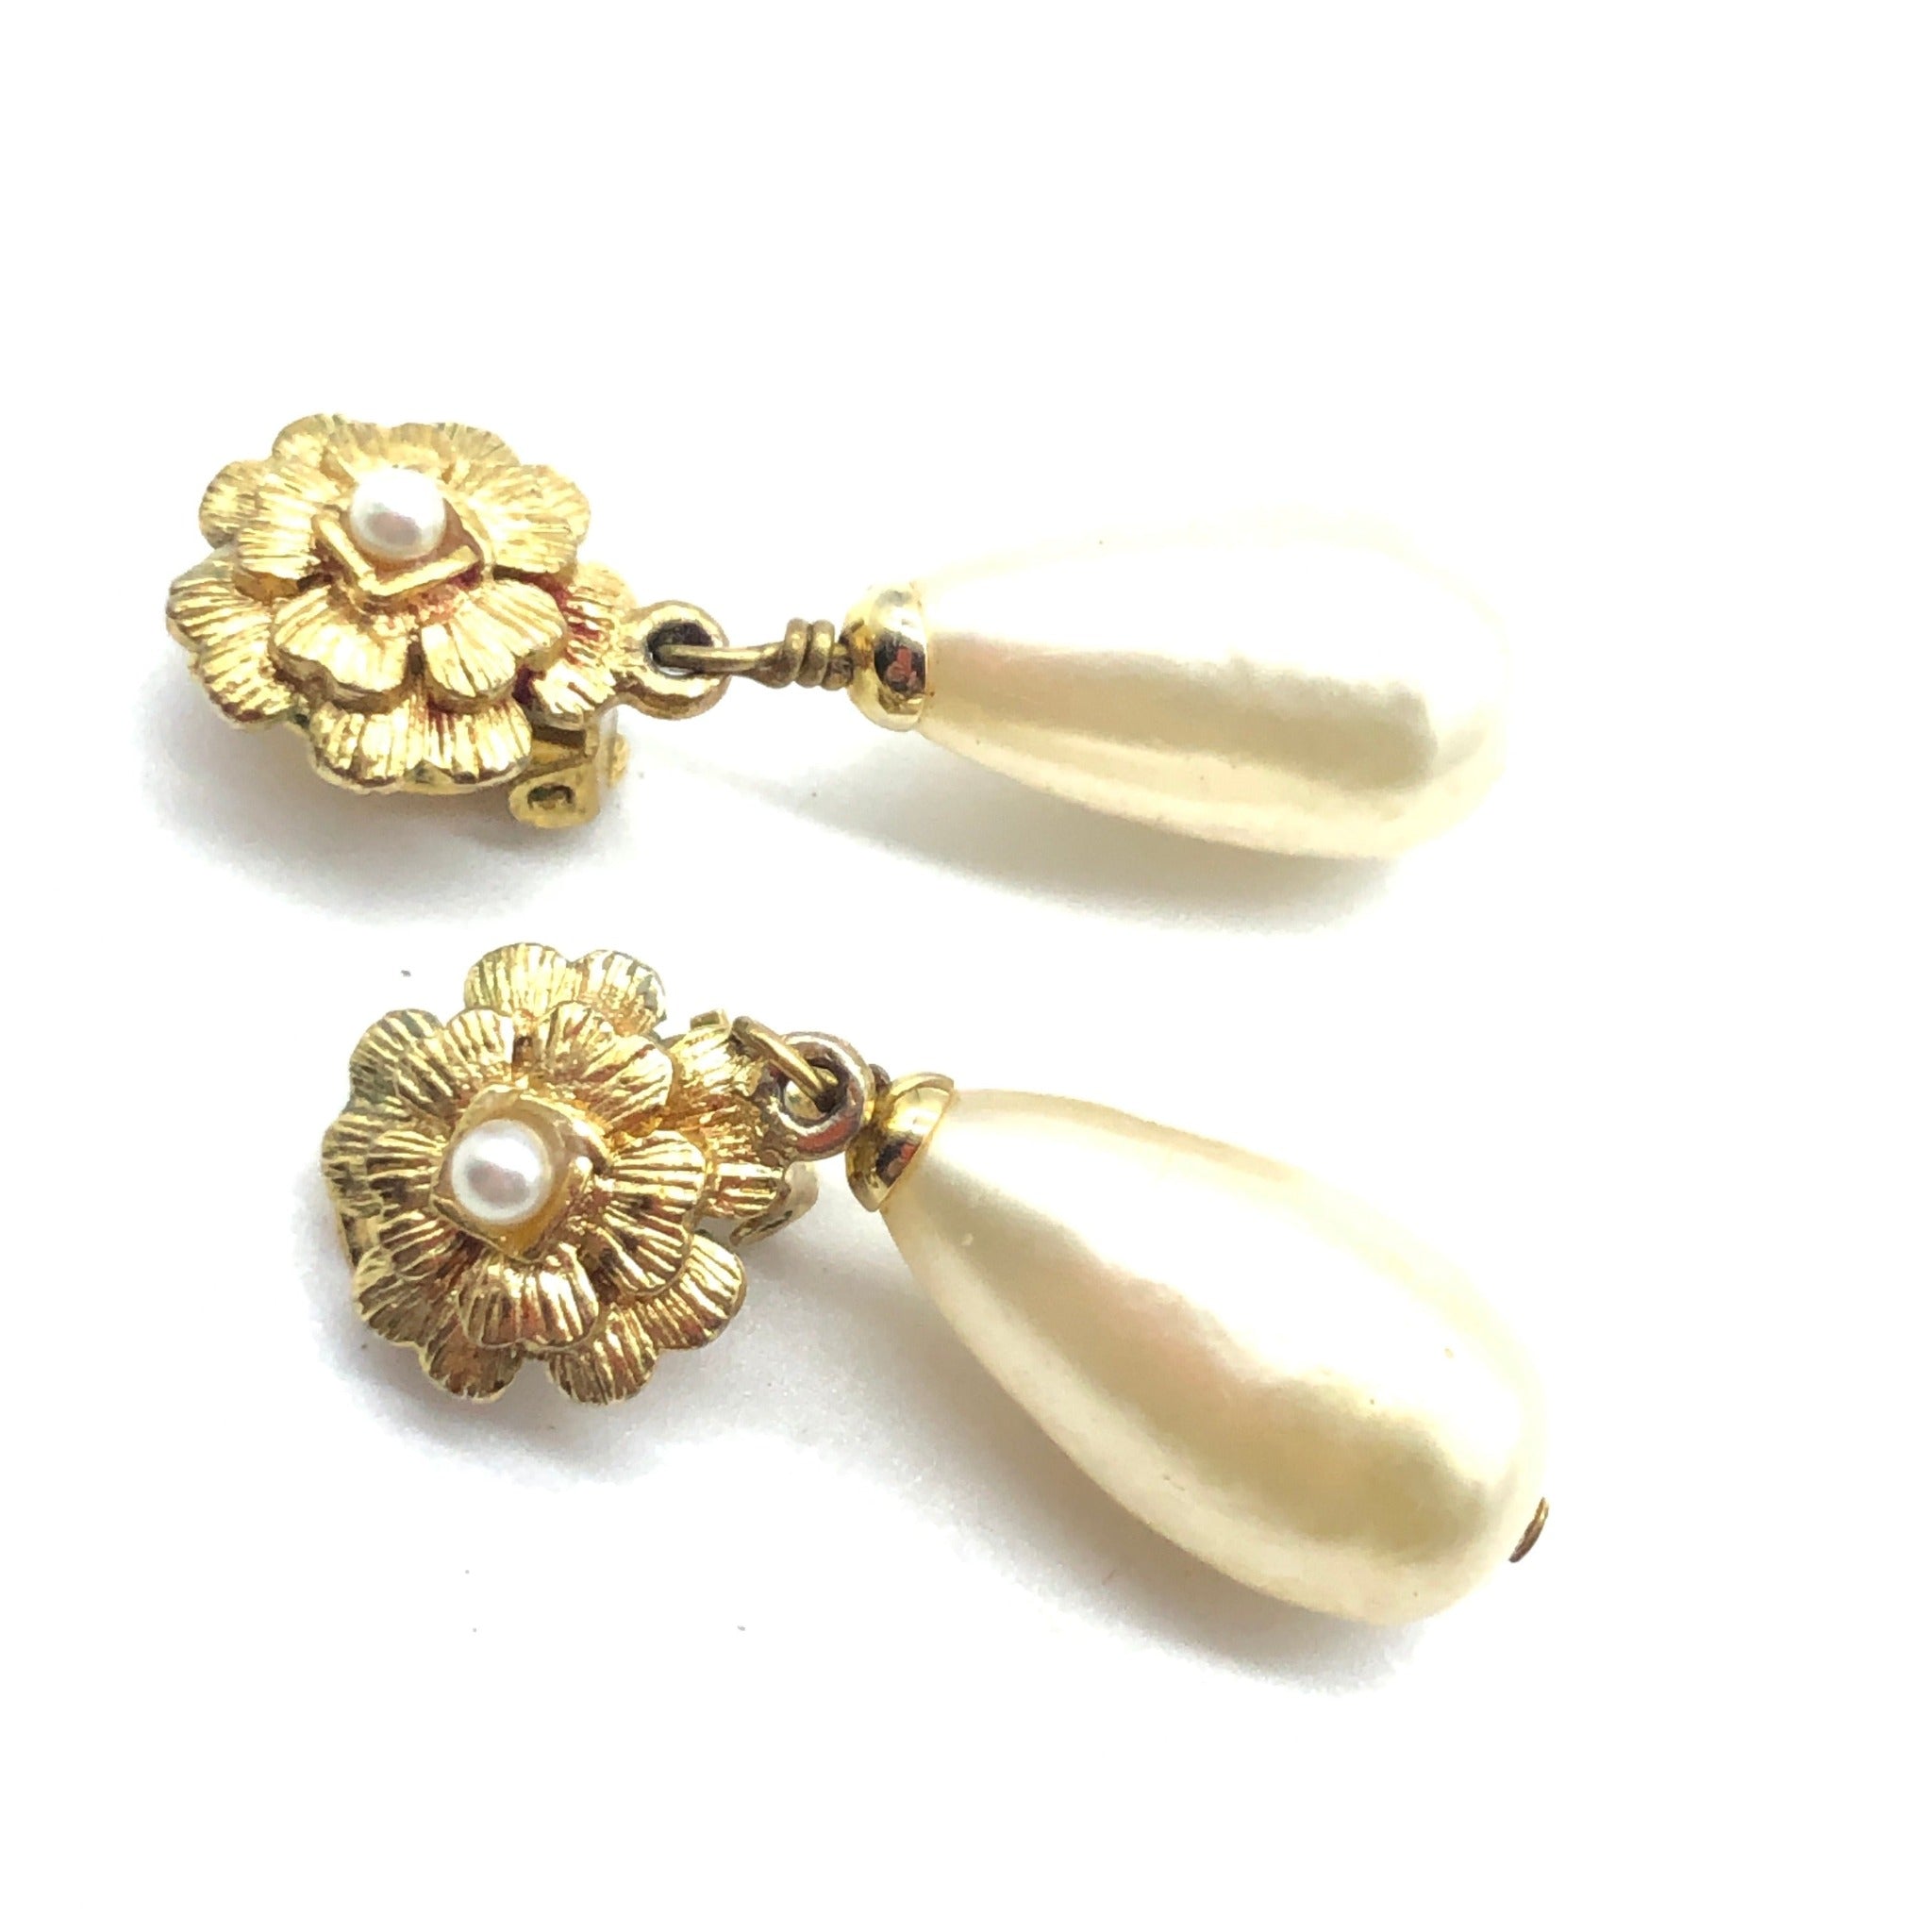 white pearl chanel earrings